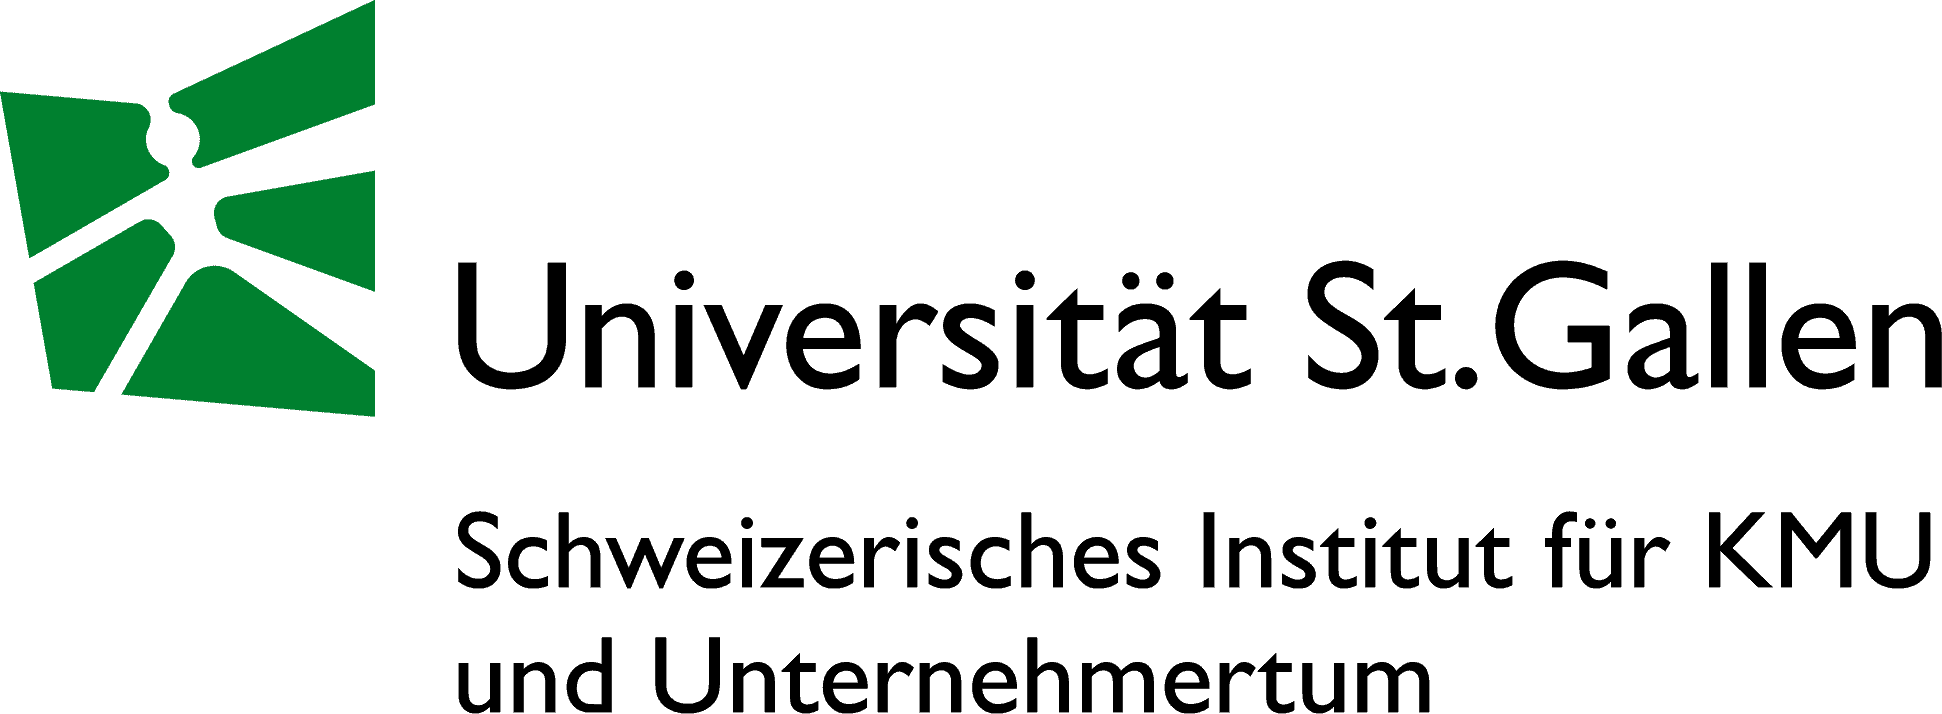 Schweizerisches Institut für KMU und Unternehmertum